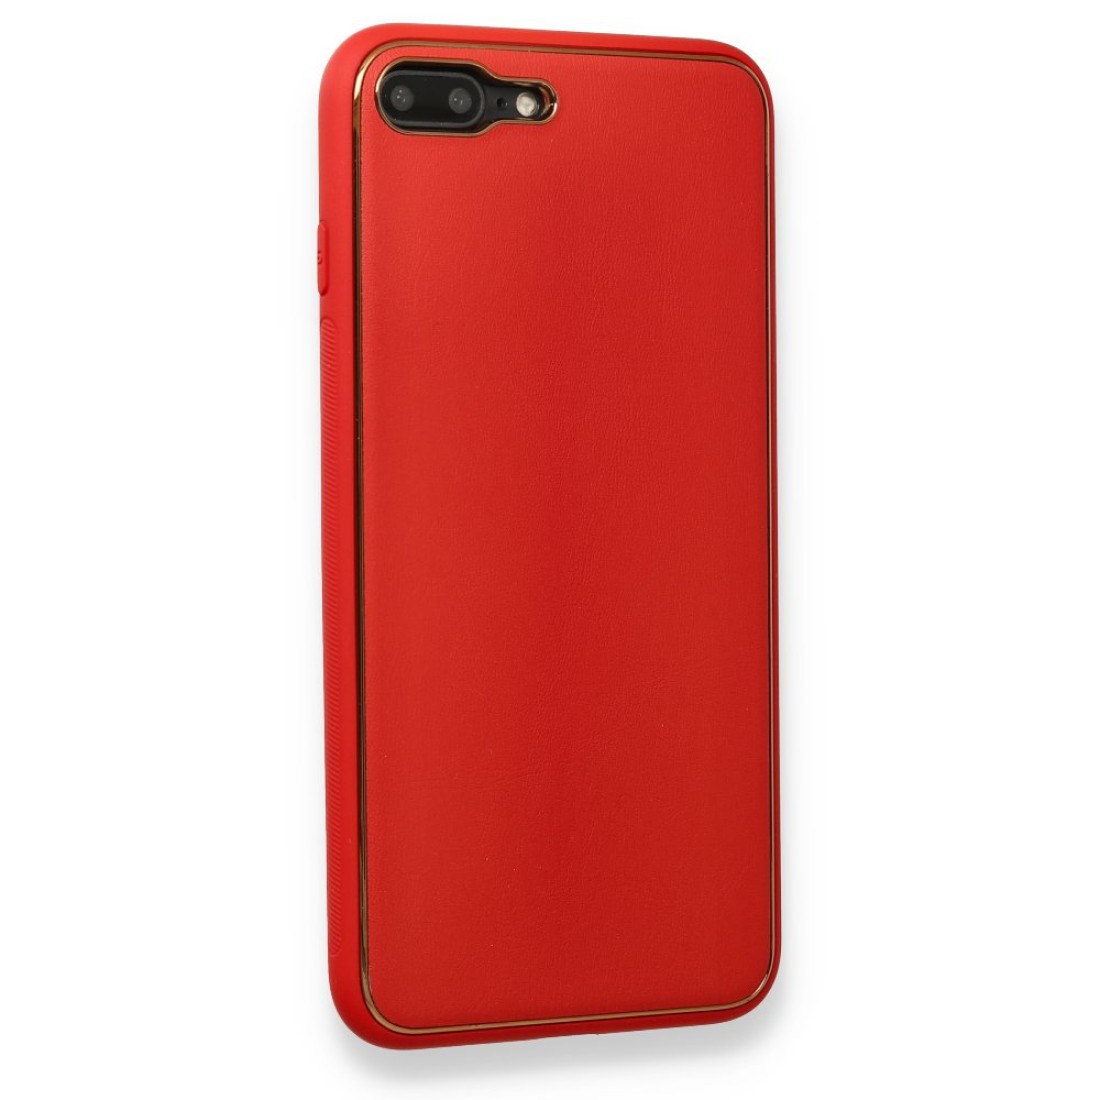 Apple iPhone 7 Plus Kılıf Coco Deri Silikon Kapak - Kırmızı